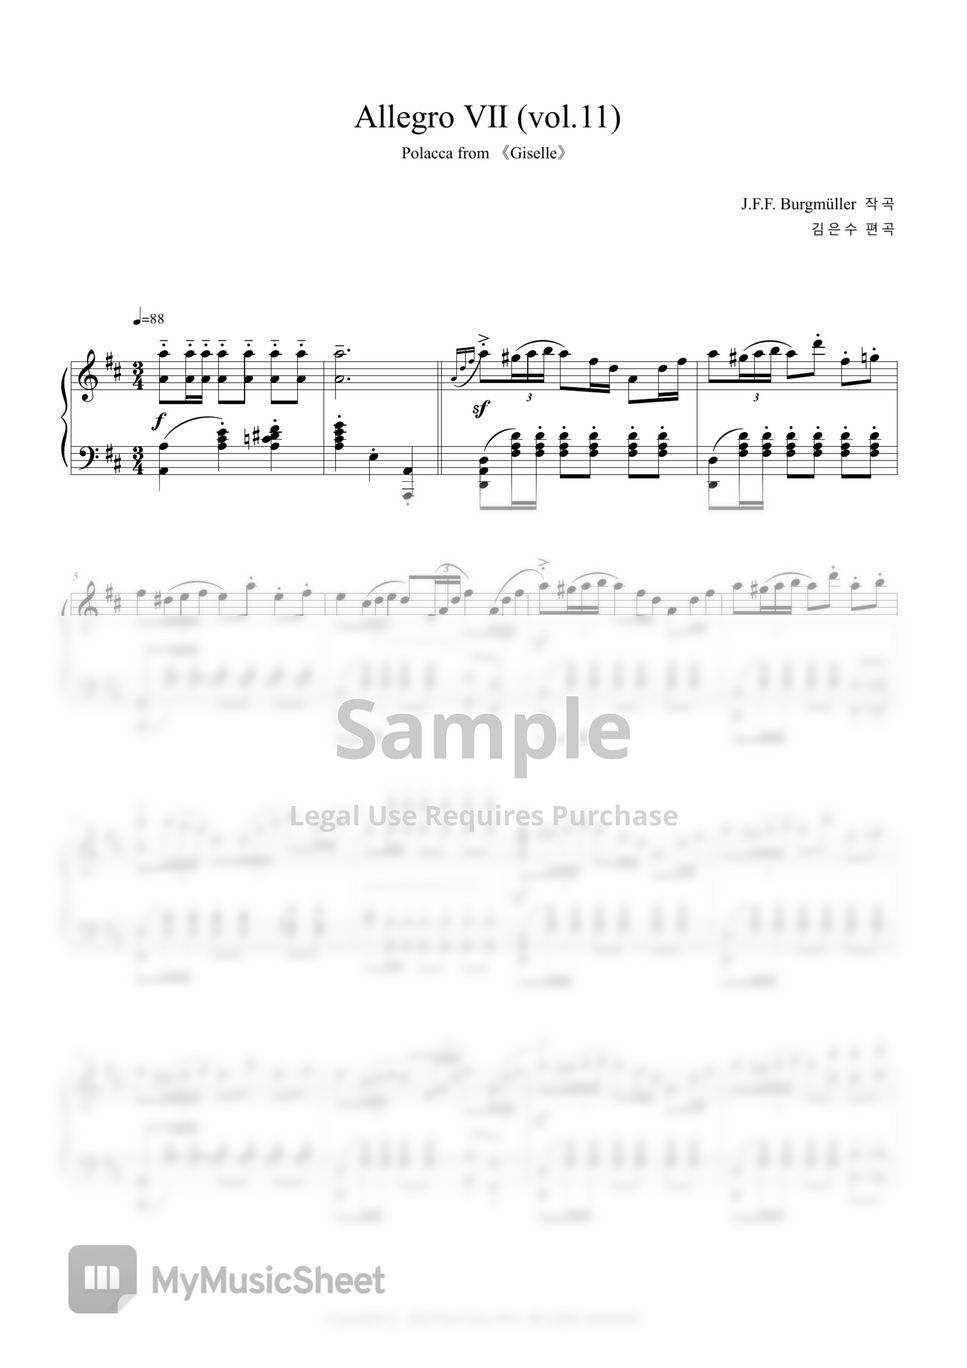 J.F.F. Burgmüller - Allegro Ⅶ (vol.11).pdf by Eun Soo Kim